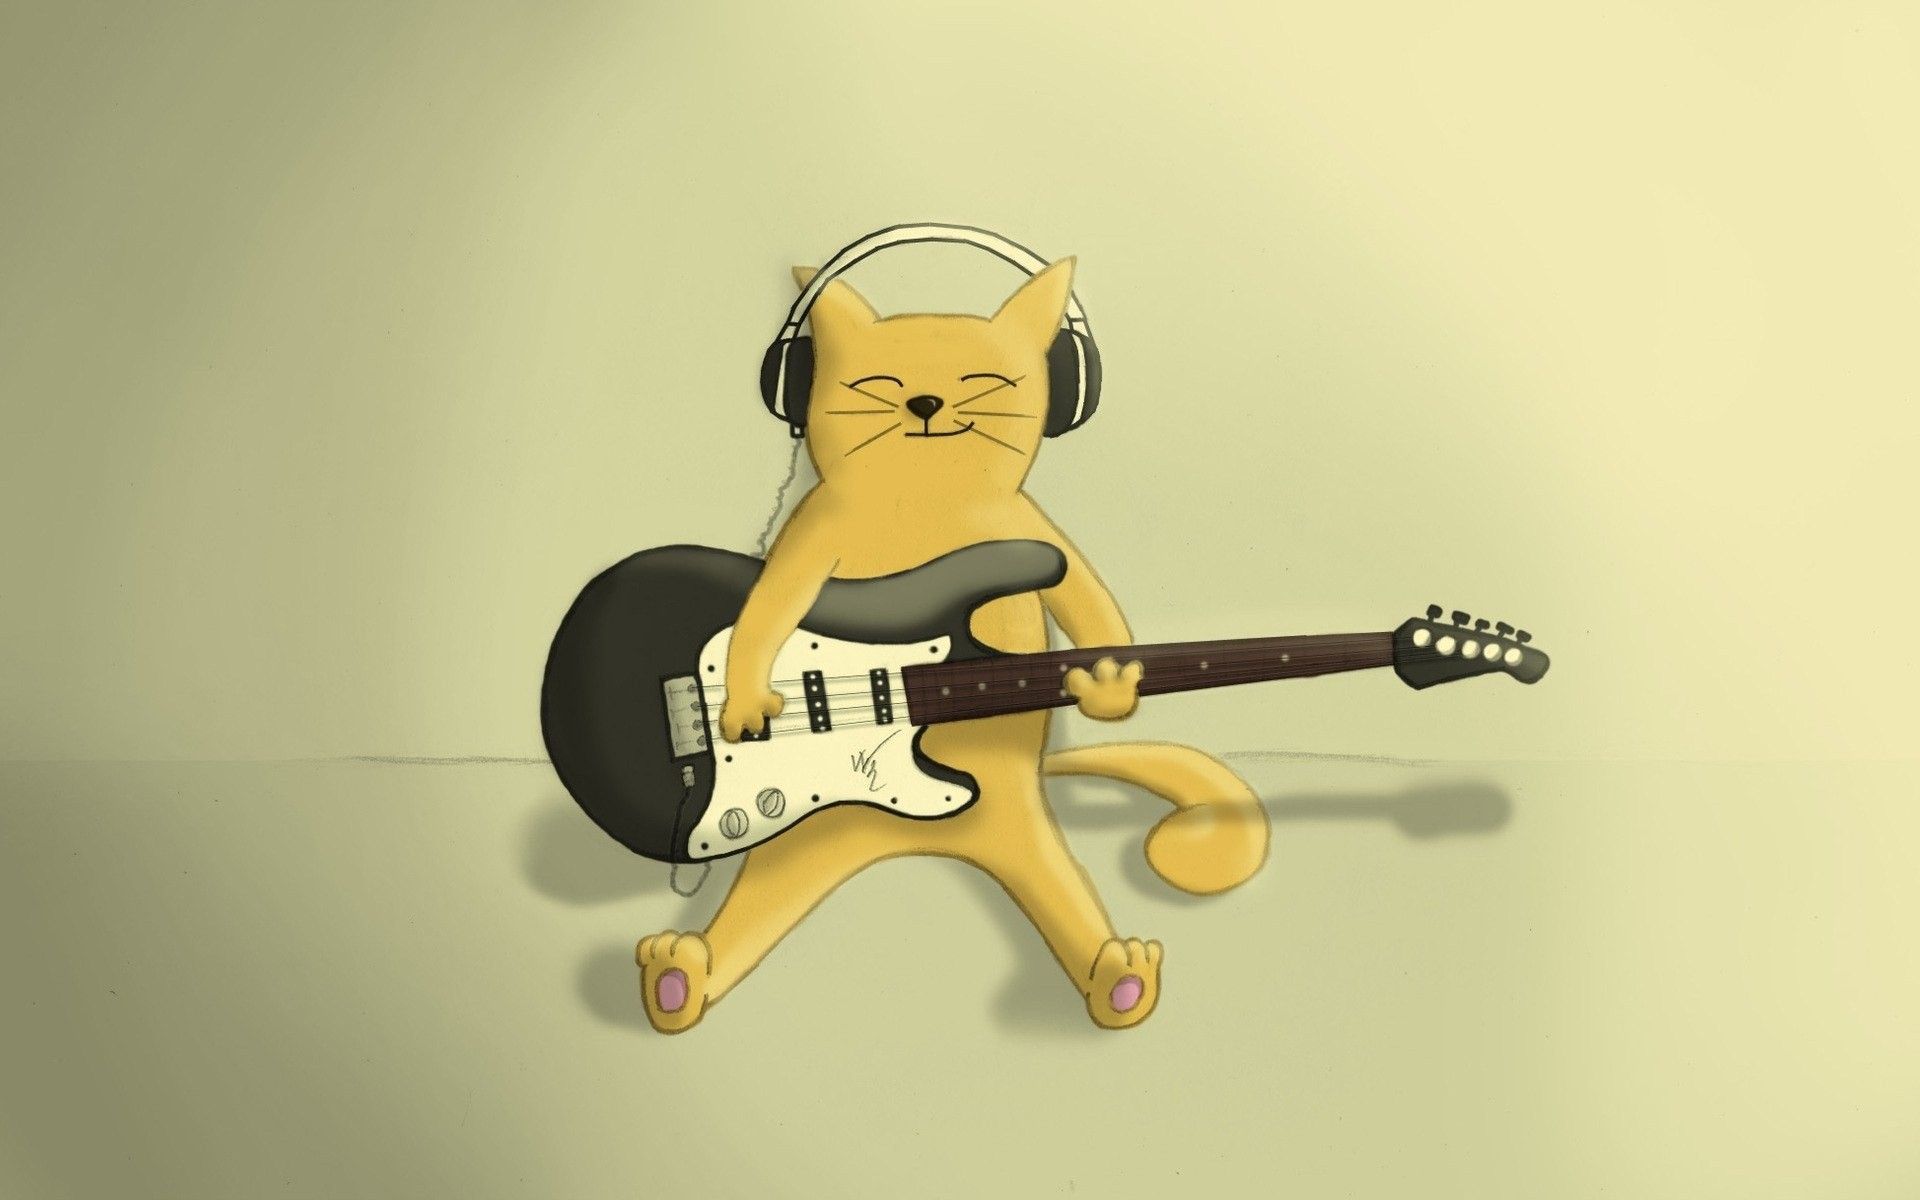 Cat With Guitar, HD Wallpaper. Guitar, Music wallpaper, Music headphones